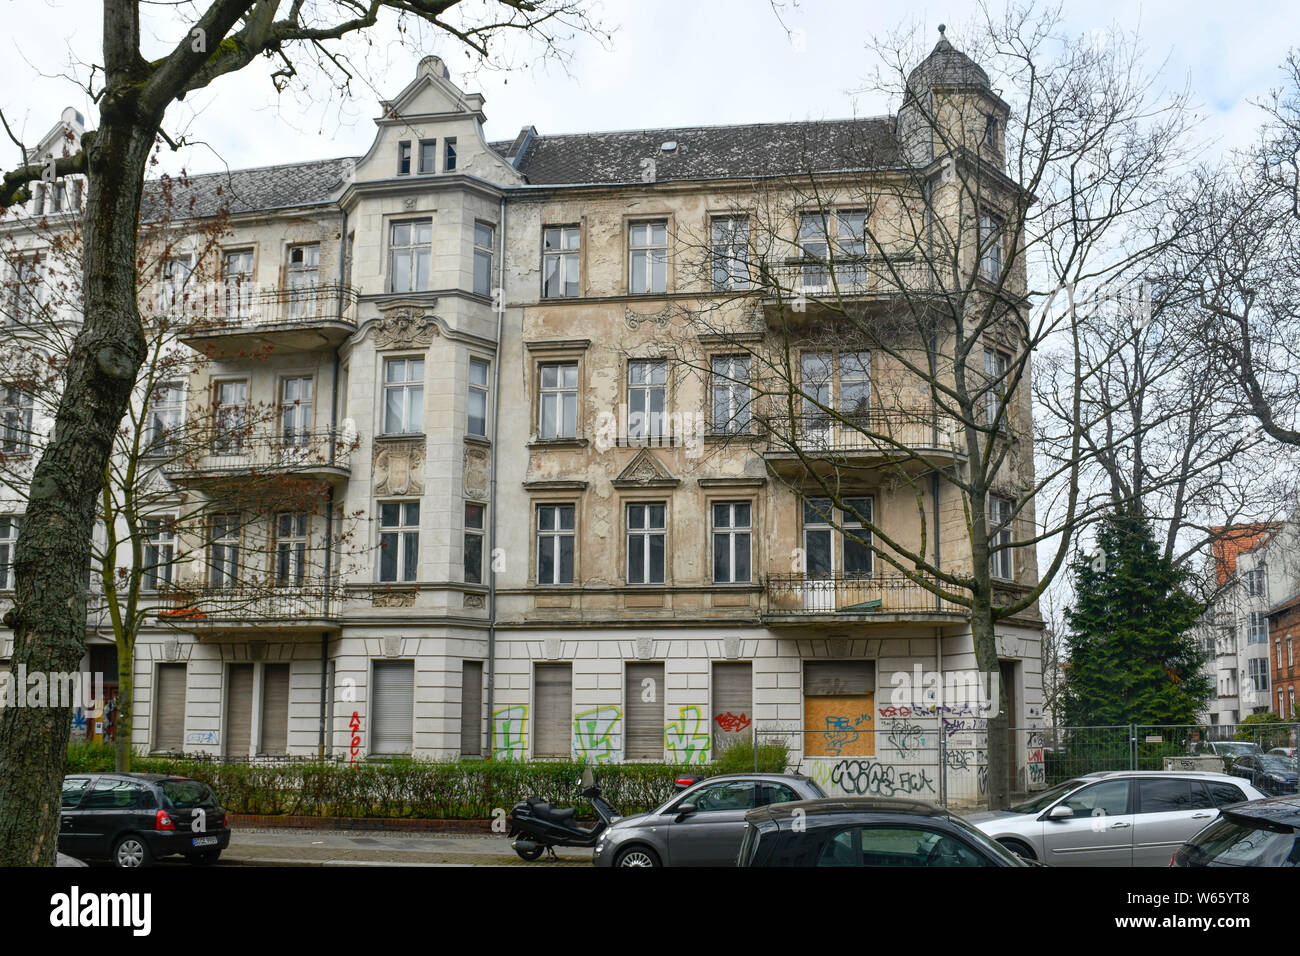 Leerstand Wohnhaus, Stubenrauchstrasse Ecke Odenwaldstrasse, Friedenau, Berlin, Deutschland Stock Photo